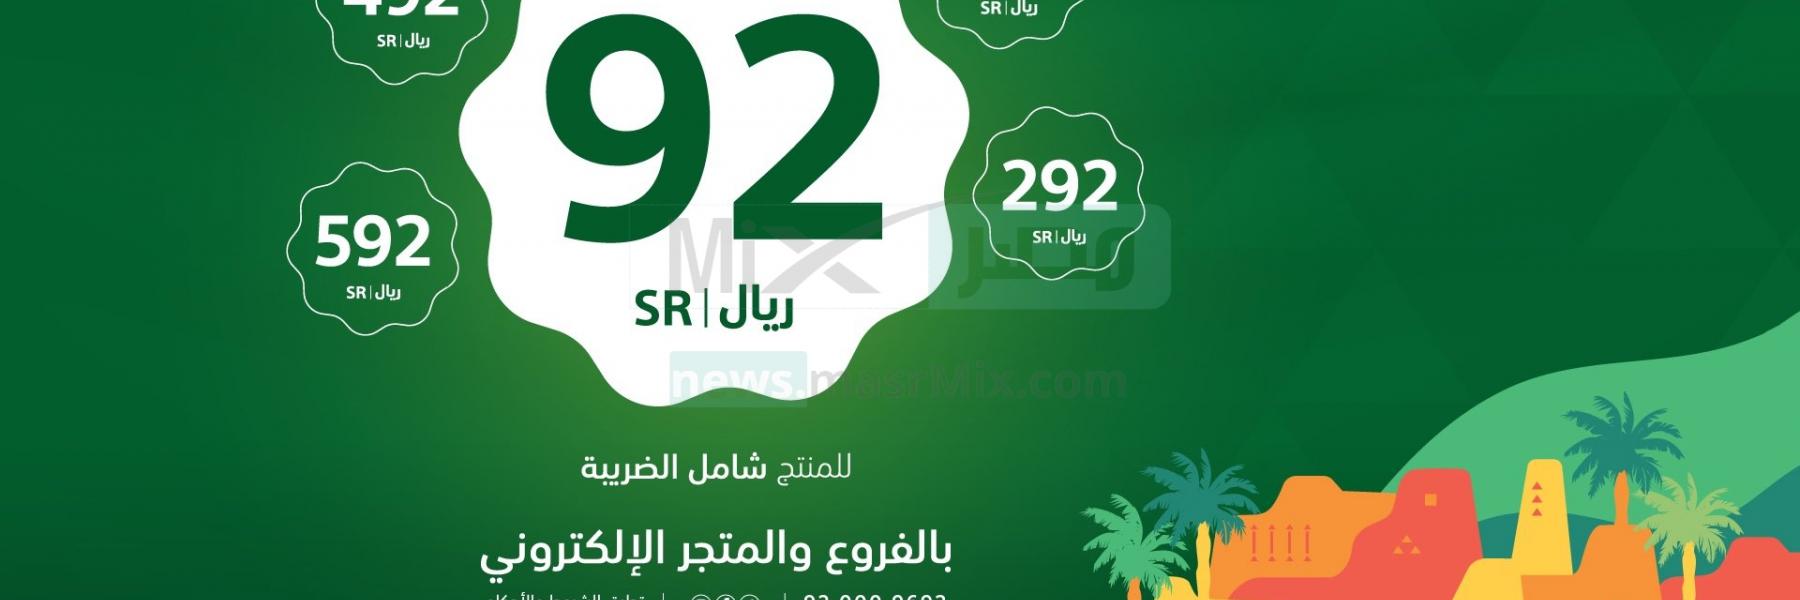 في اليوم الوطني السعودي 92